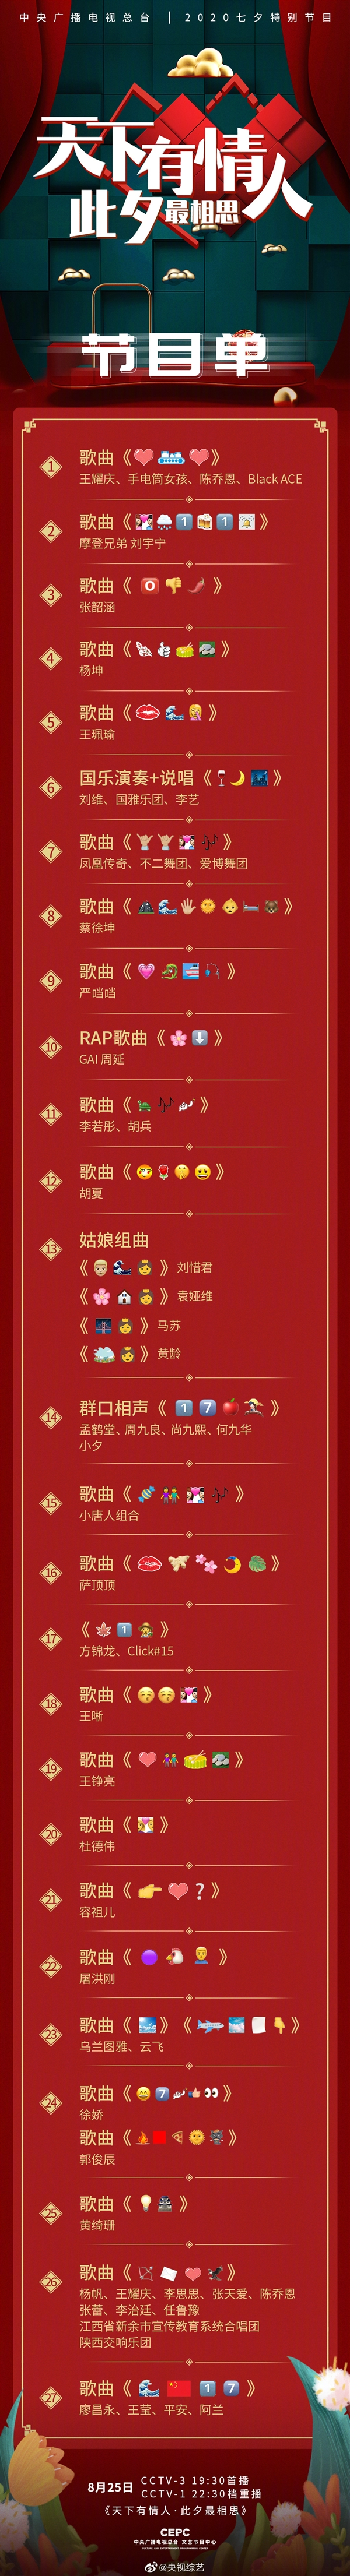 央视七夕晚会emoji节目单 你都看得懂吗